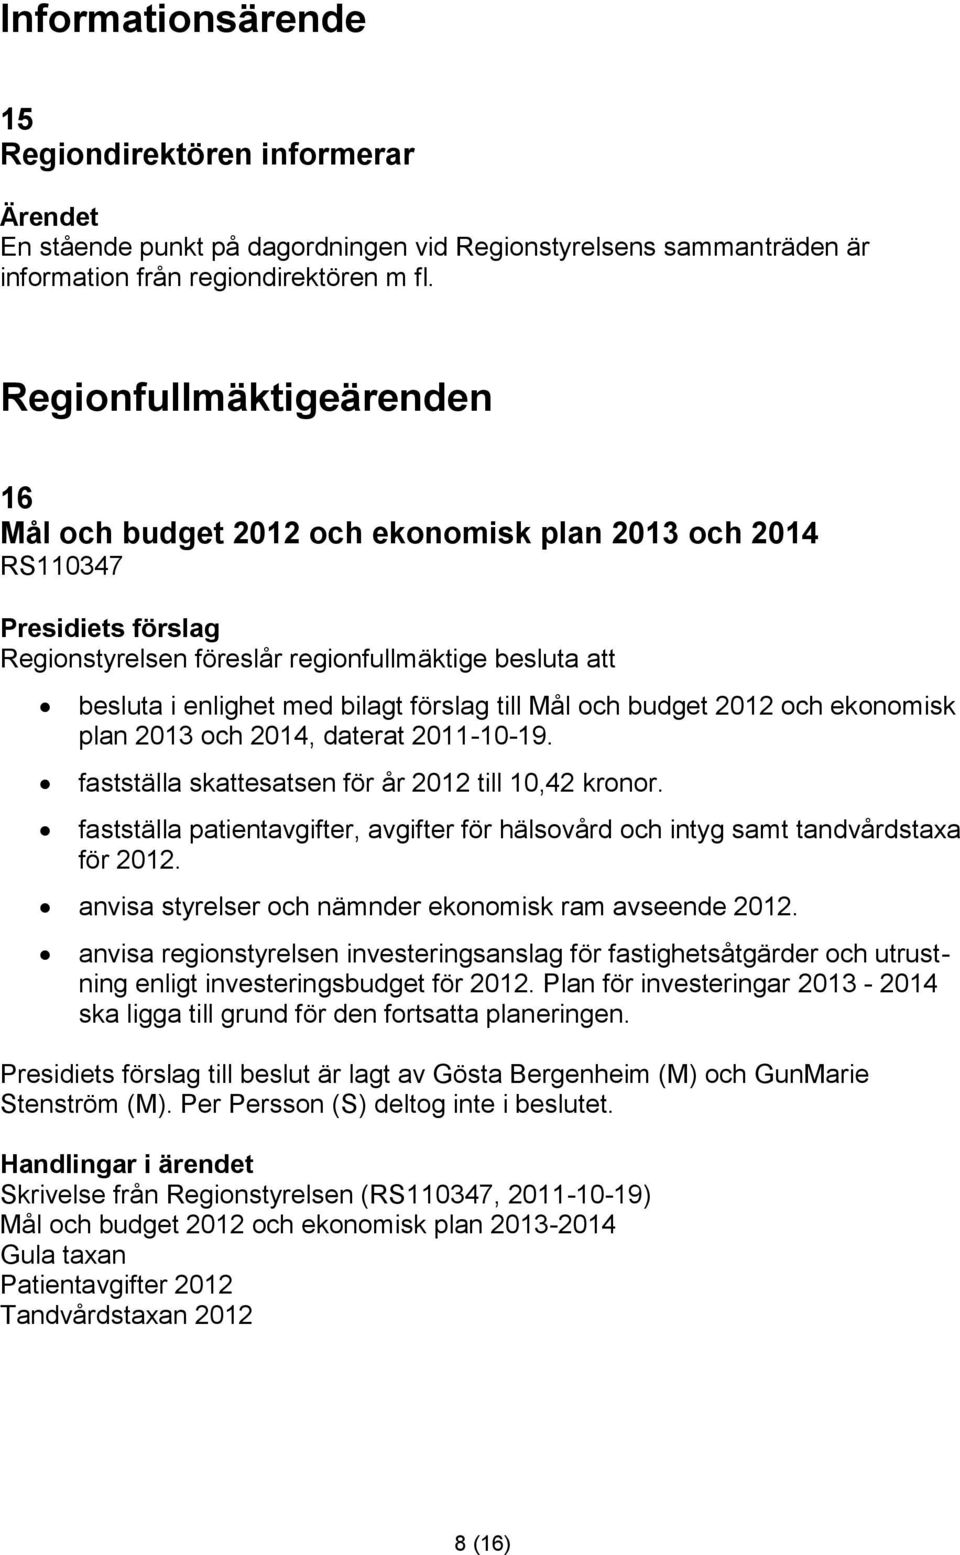 budget 2012 och ekonomisk plan 2013 och 2014, daterat 2011-10-19. fastställa skattesatsen för år 2012 till 10,42 kronor.